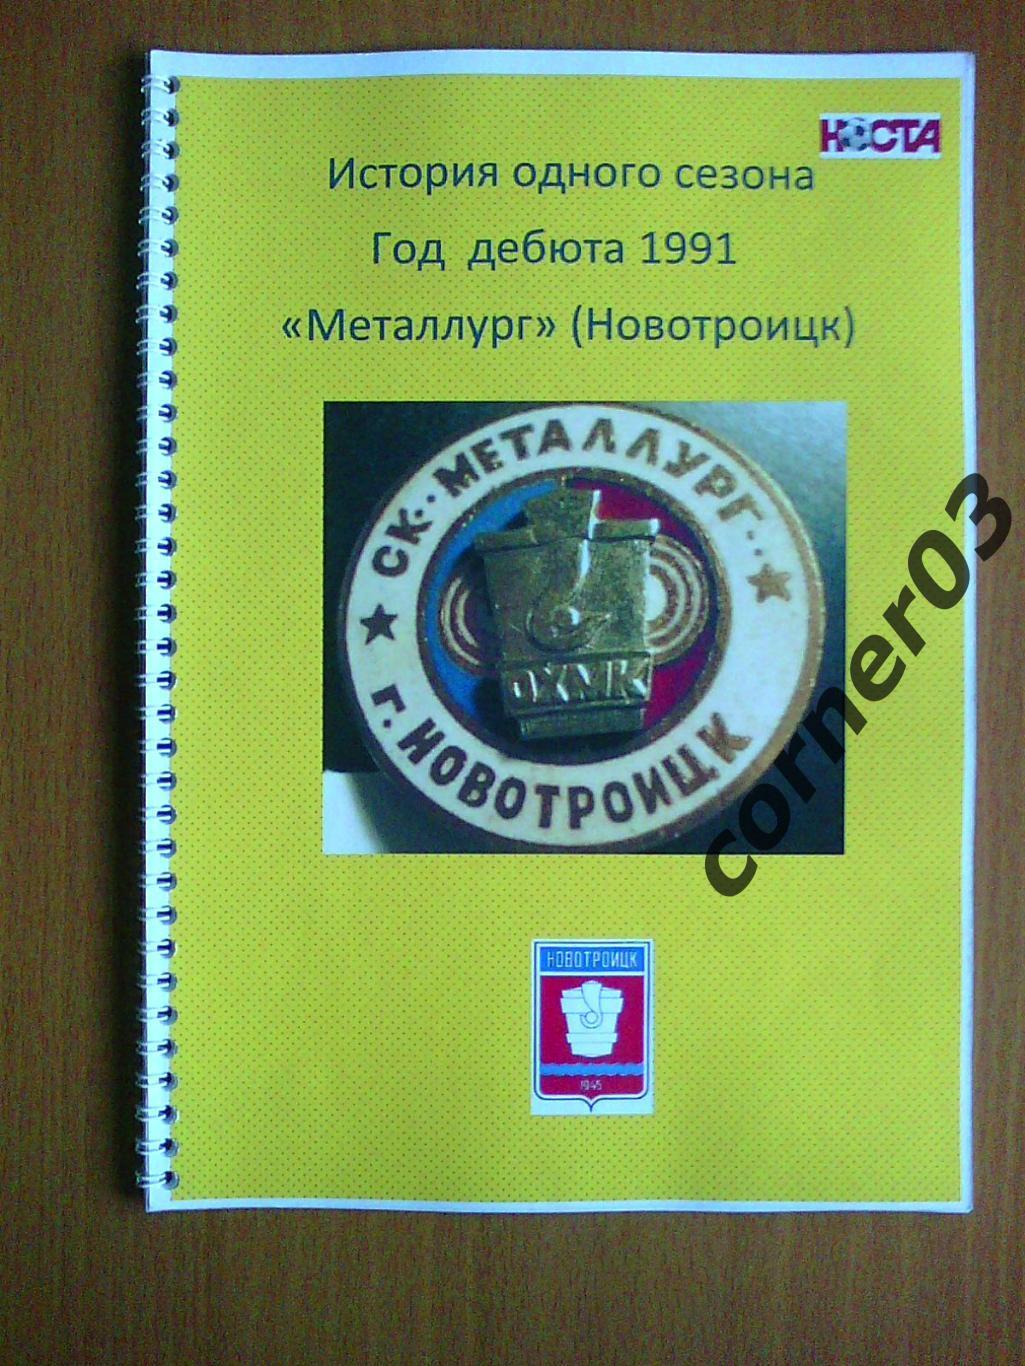 История одного сезона. Металлург Новотроицк. 1991